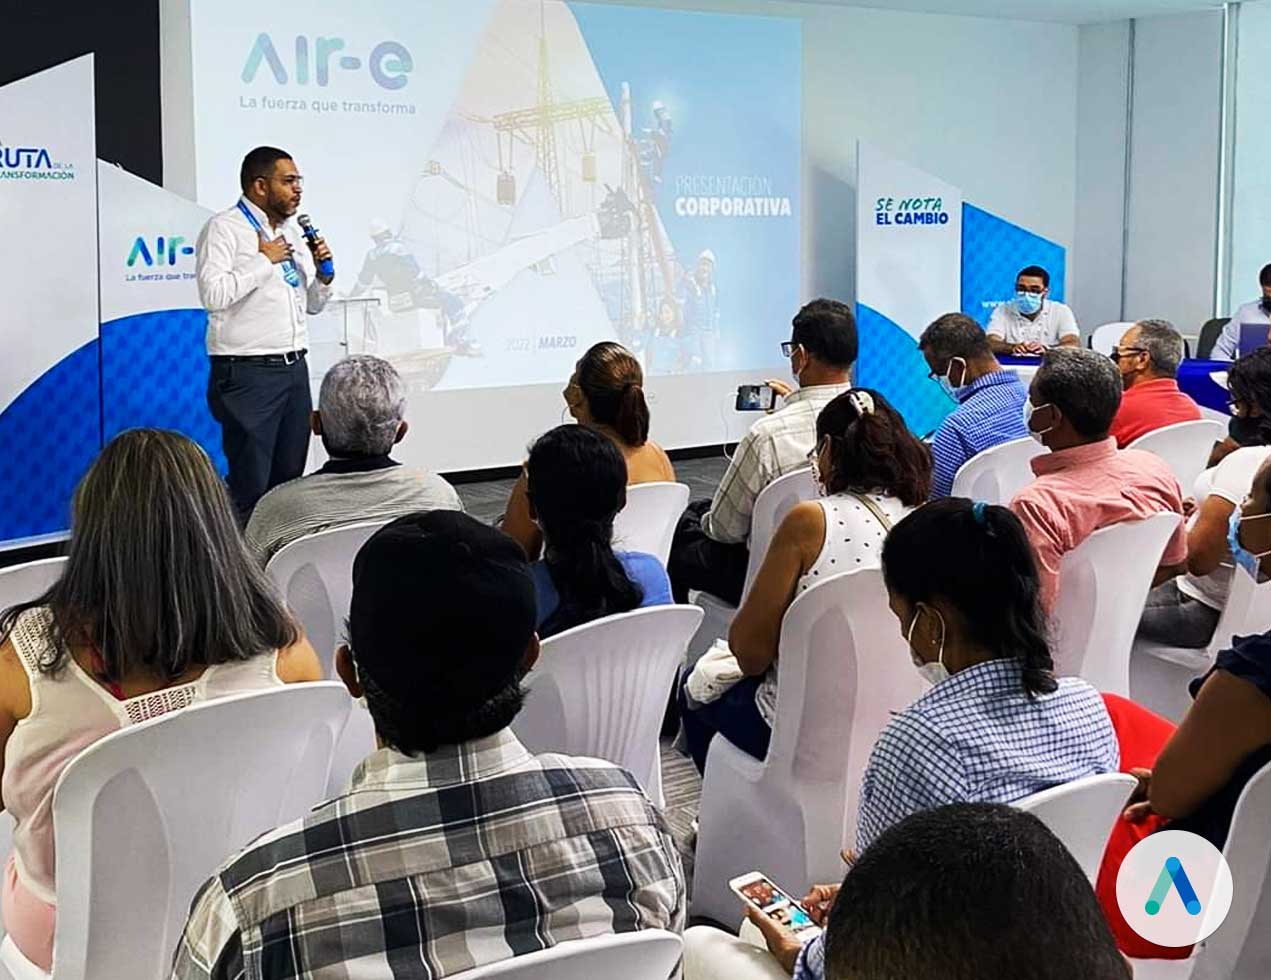 Air-e lanza “Mentes líderes” para la formación de 70 líderes del Magdalena